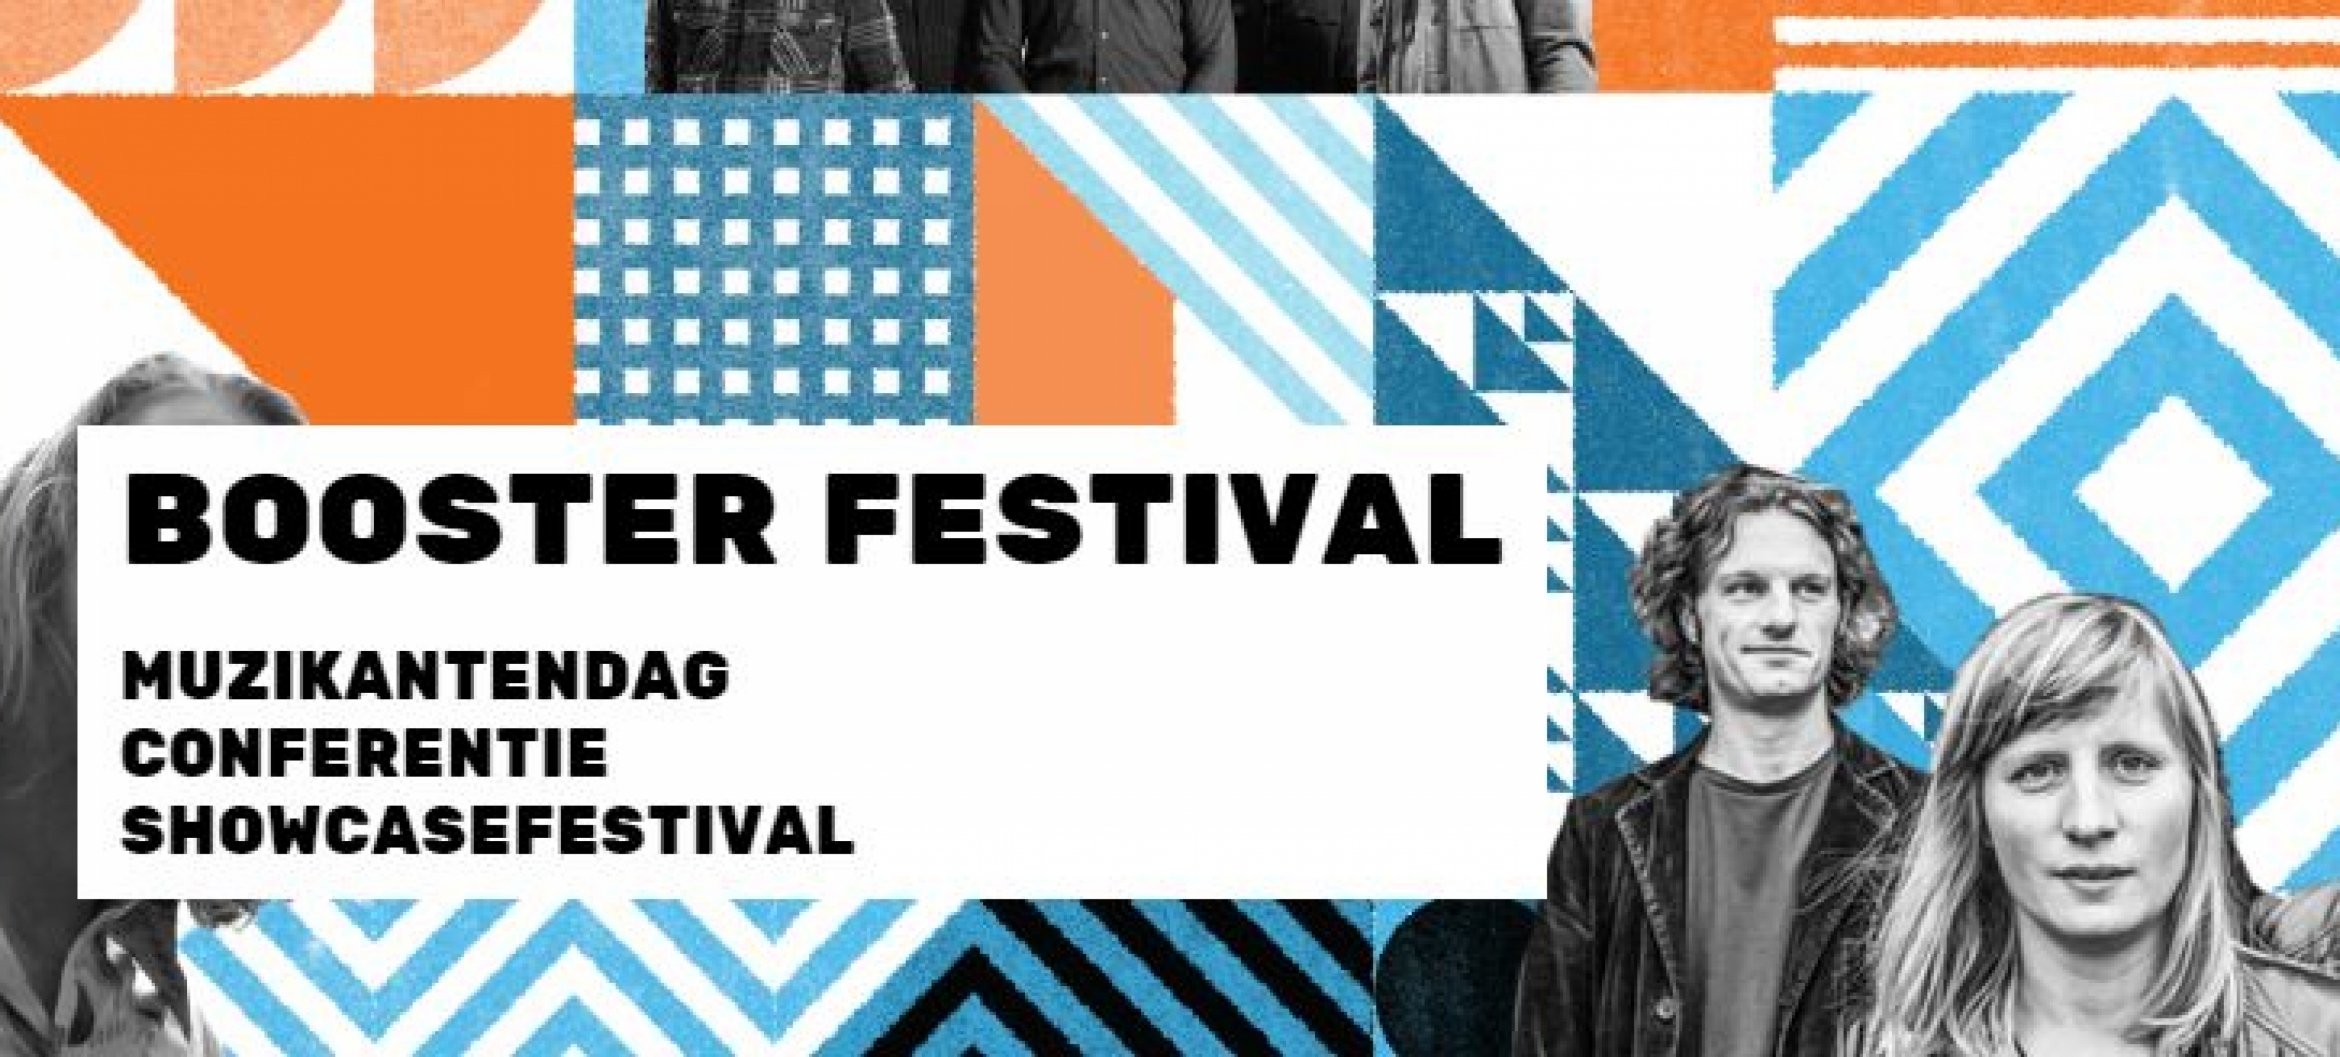 Mo Ali opent Booster, hèt festival voor muziektalent uit Oost-Nederland